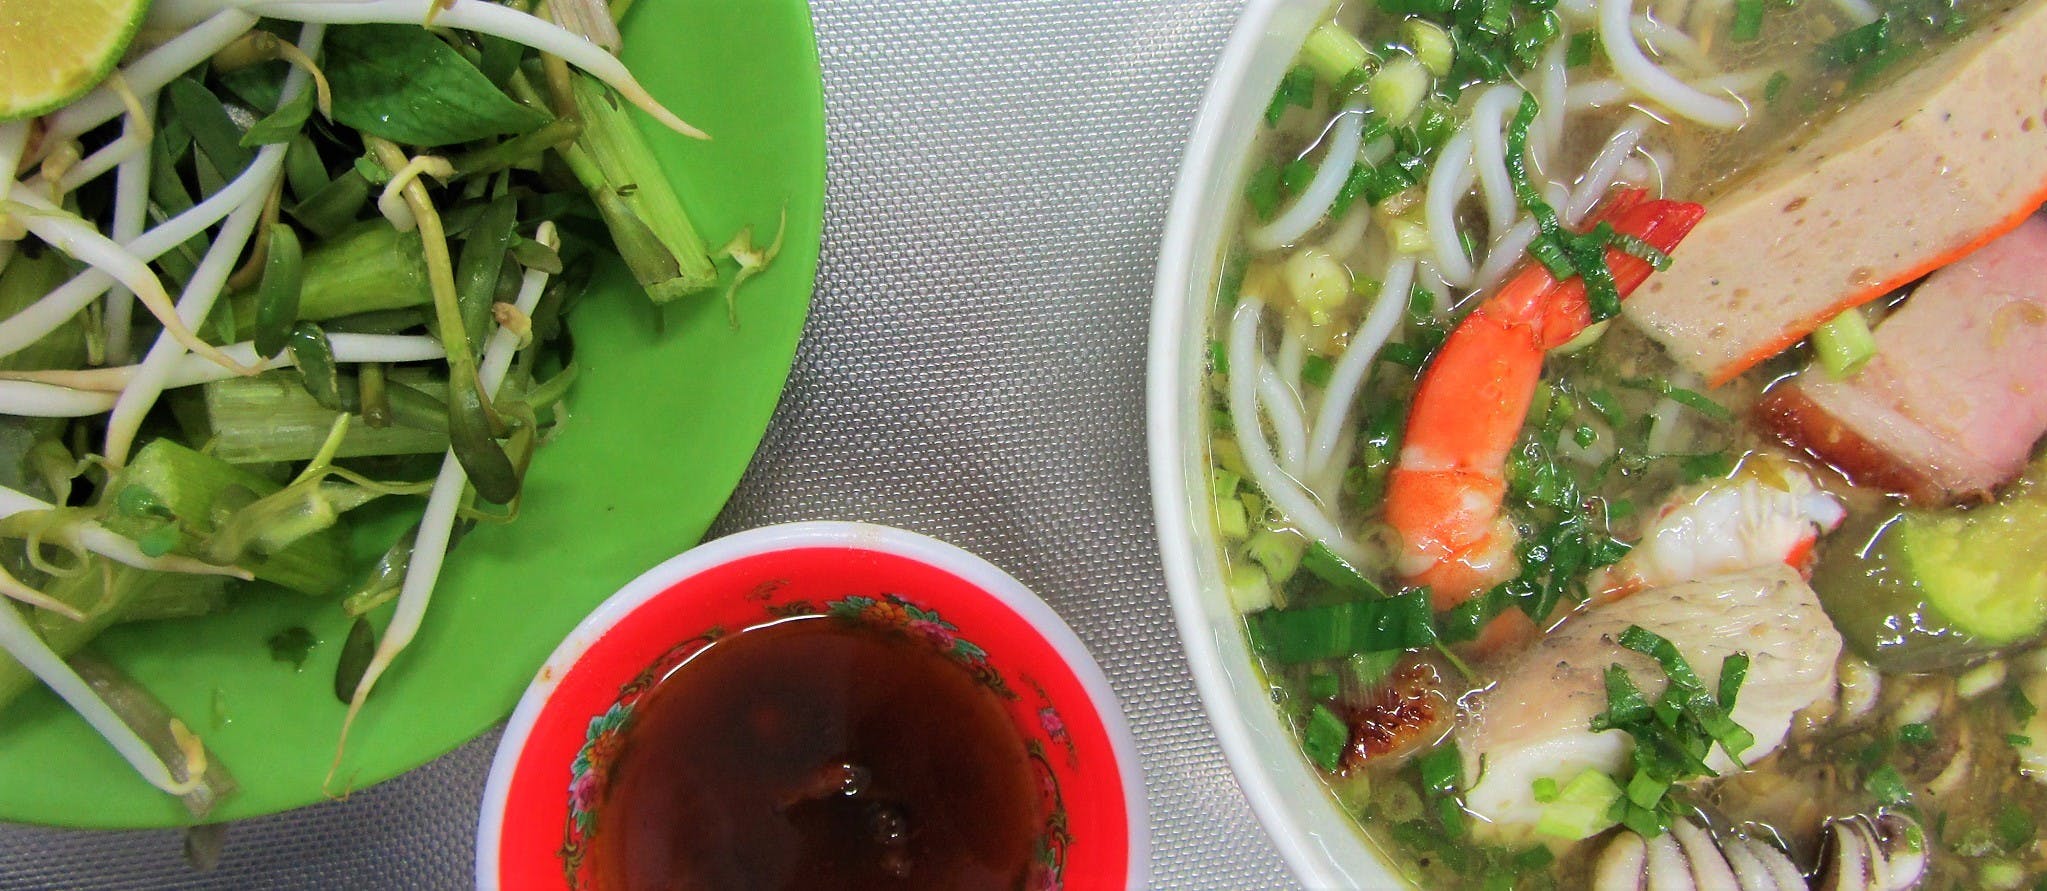 Bún Mắm noodle soup, Vietnam